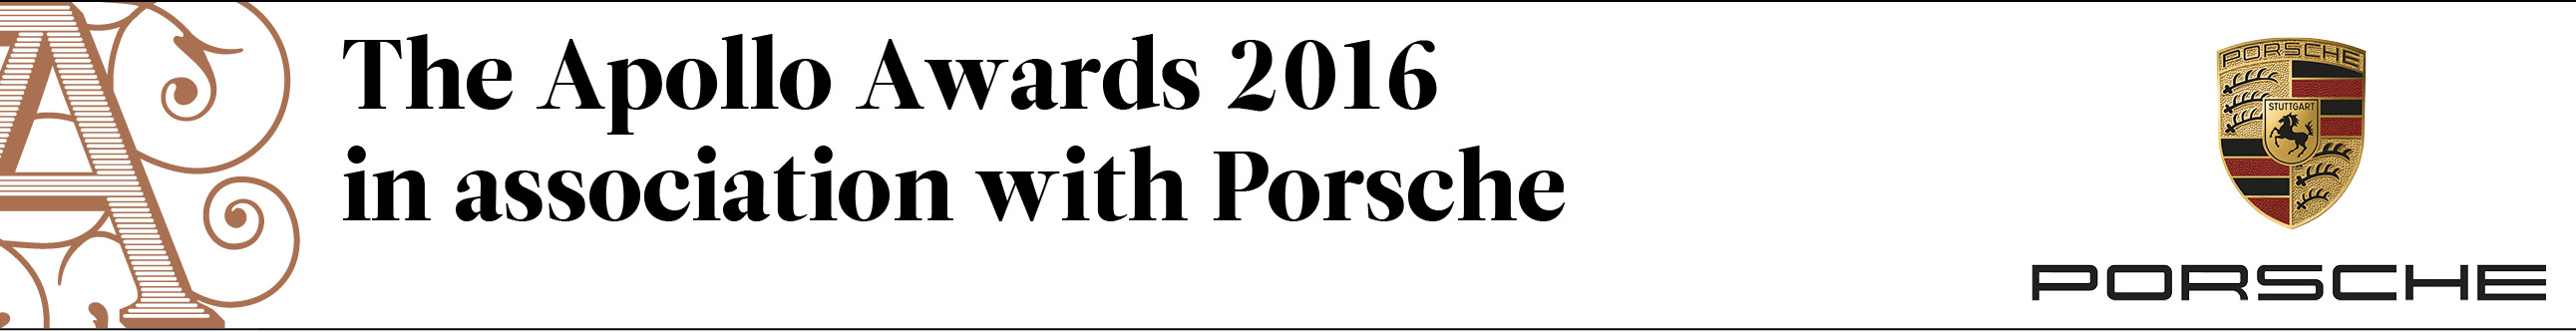 The Apollo Awards 2016 in association with Porsche